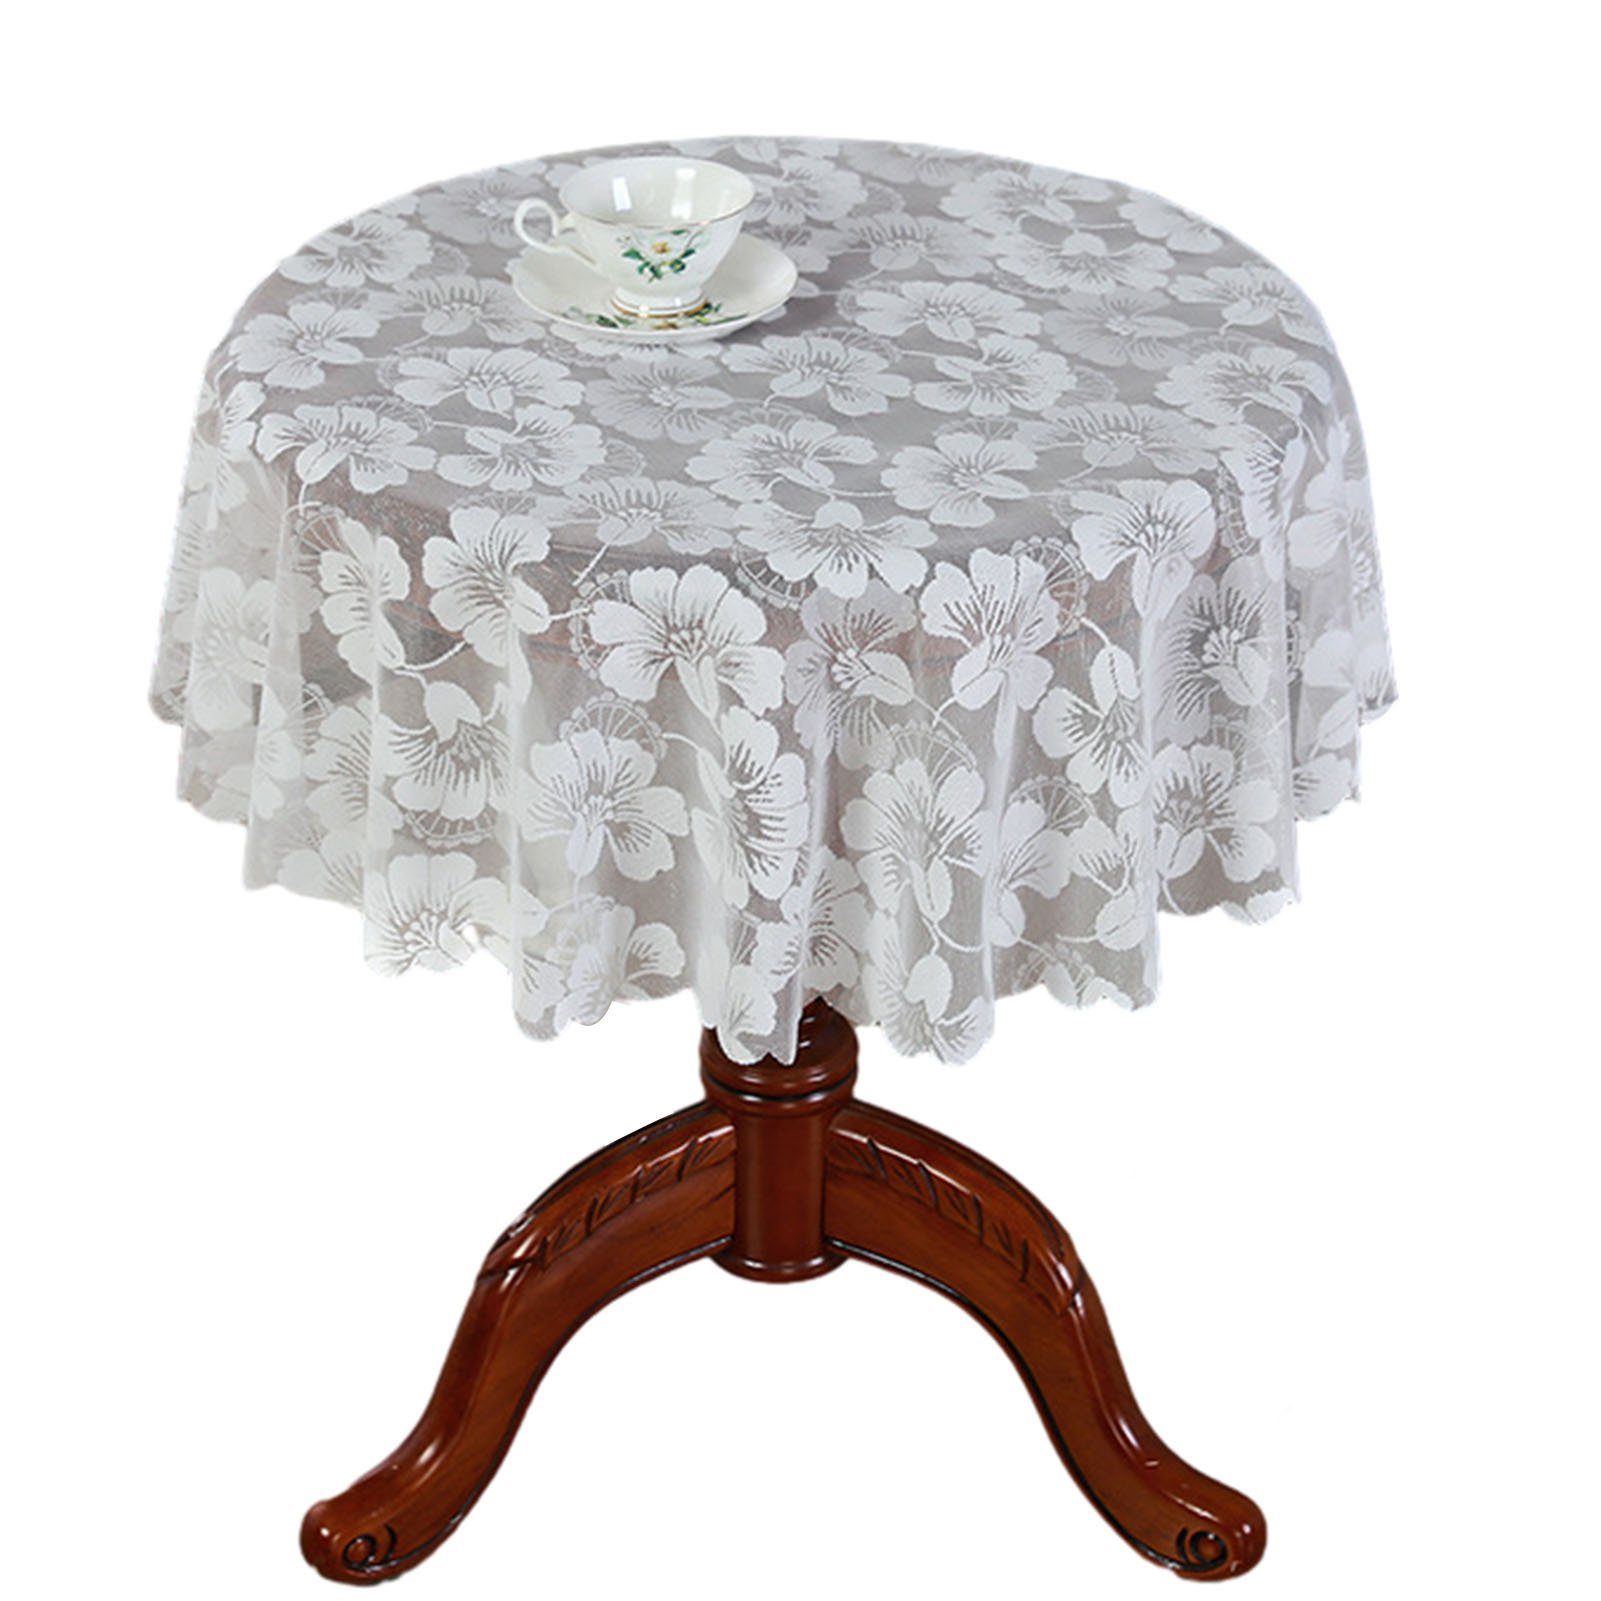 In Dekorative Runde Tischschonbezug Farbe, Blusmart Stilvolle Spitzentischdecke Weißer